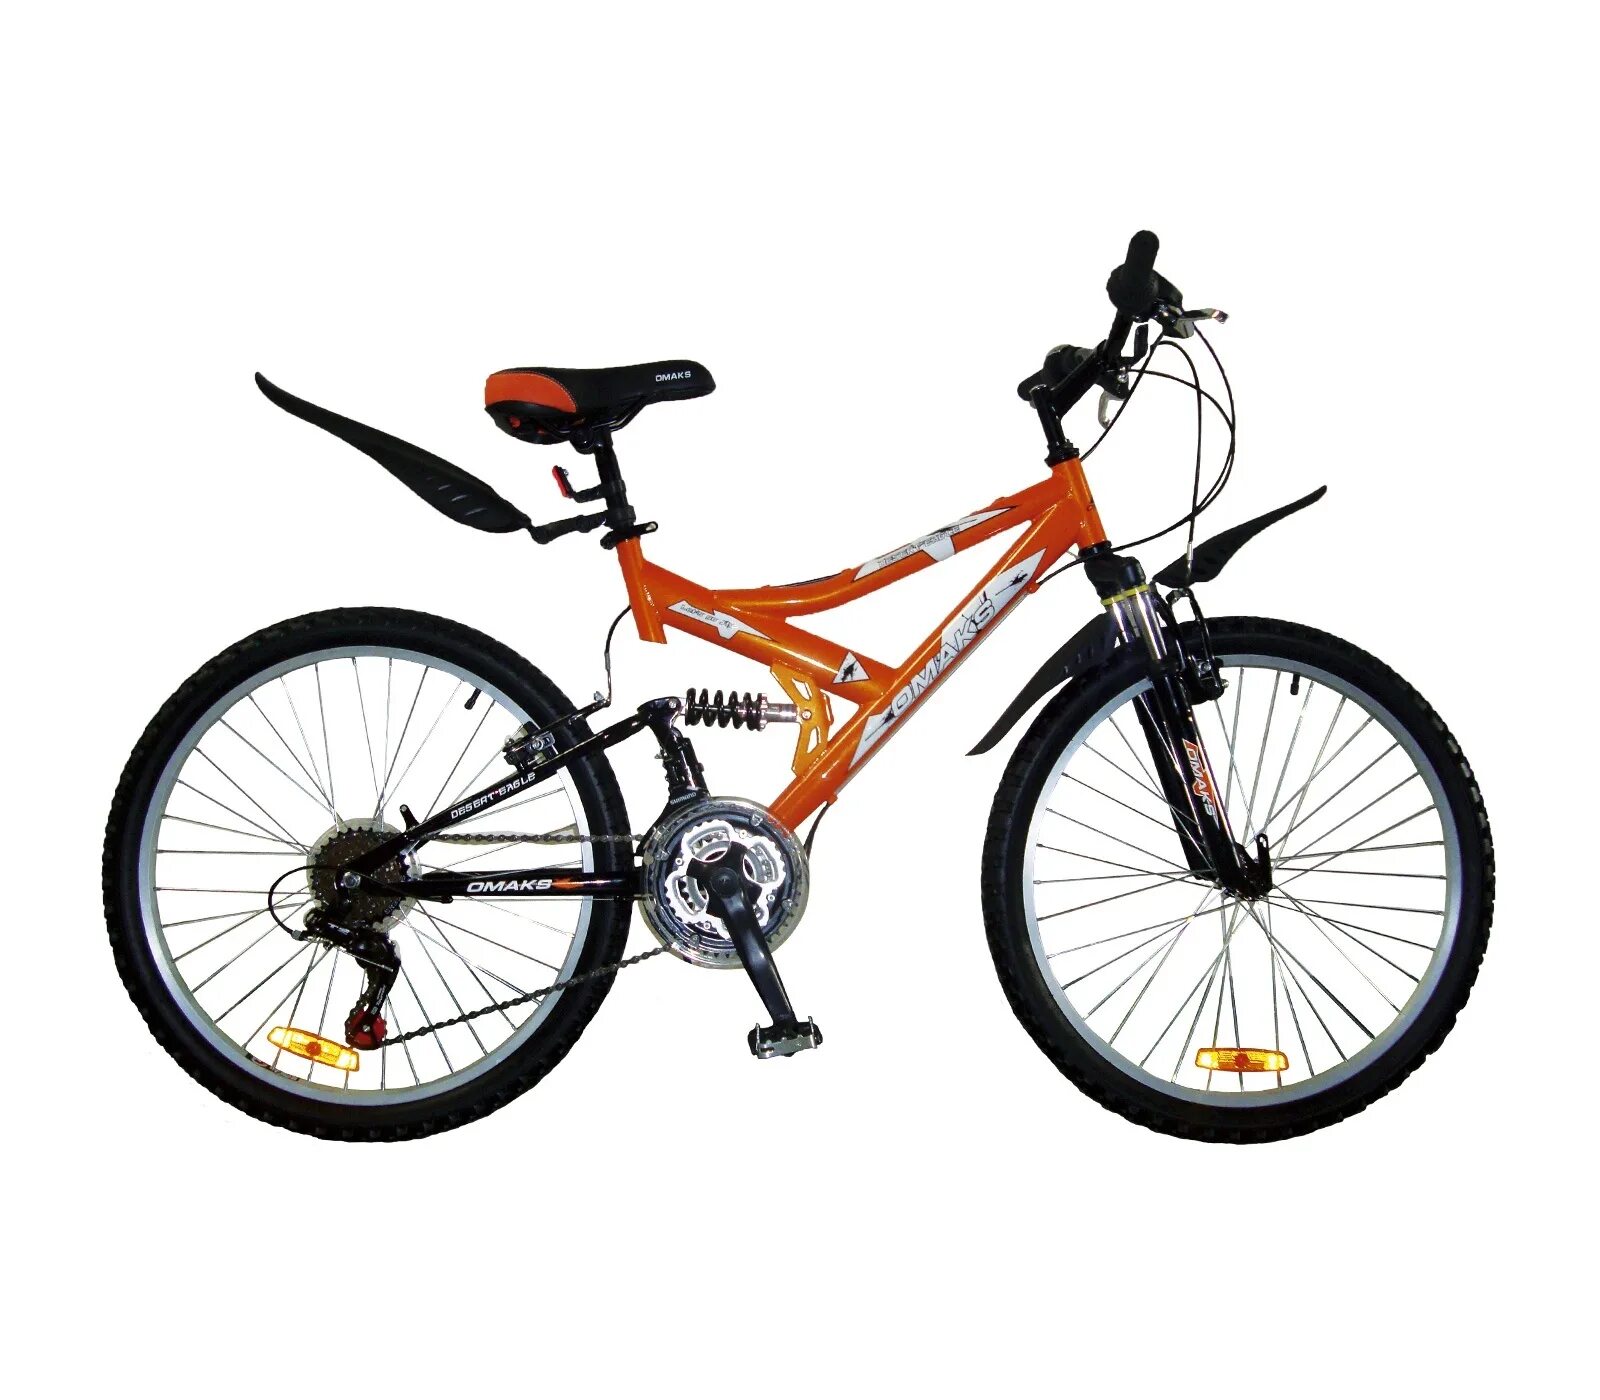 Стелс скоростной оранжевый. Велосипед стелс оранжевый скоростной. Велосипед.скоростной стелс 24 скорости. Велик стелс скоростной оранжевый. Купить велосипед в омске недорого